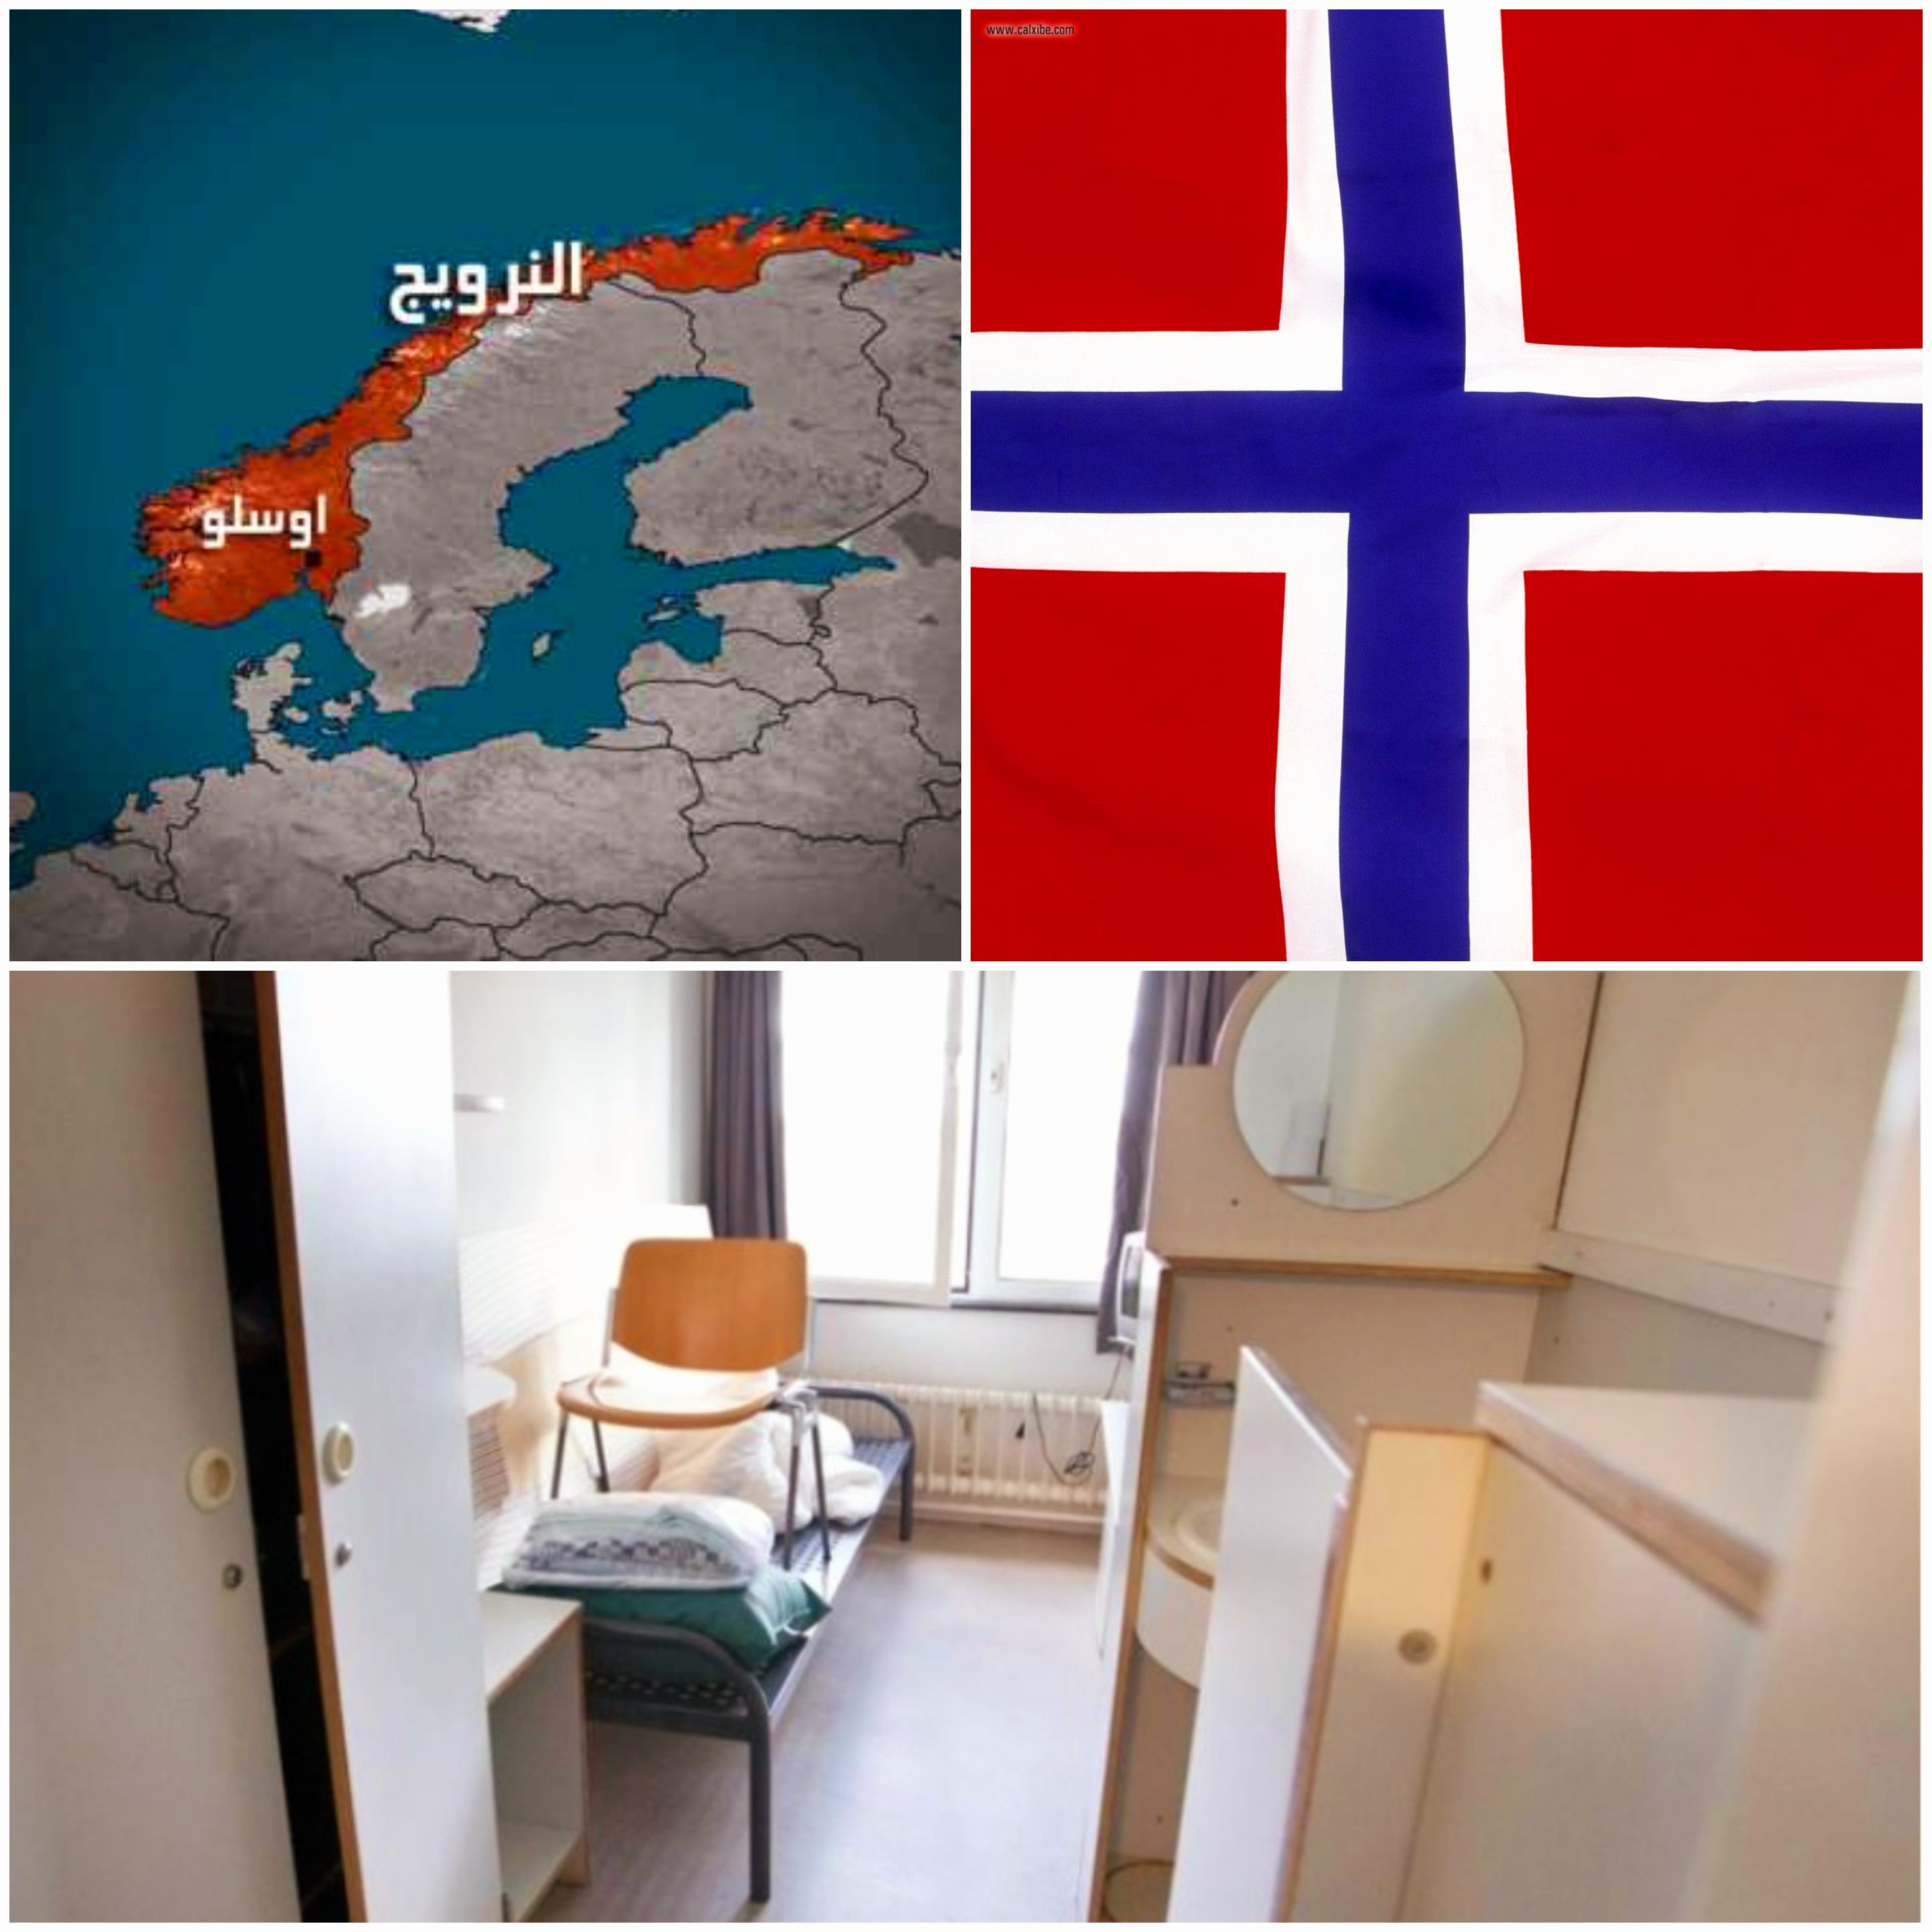 رفضت محكمة مناهضة التمييز النرويجية ادعاء إدارة السجن بأن ما حدث “خطأ بشري”.